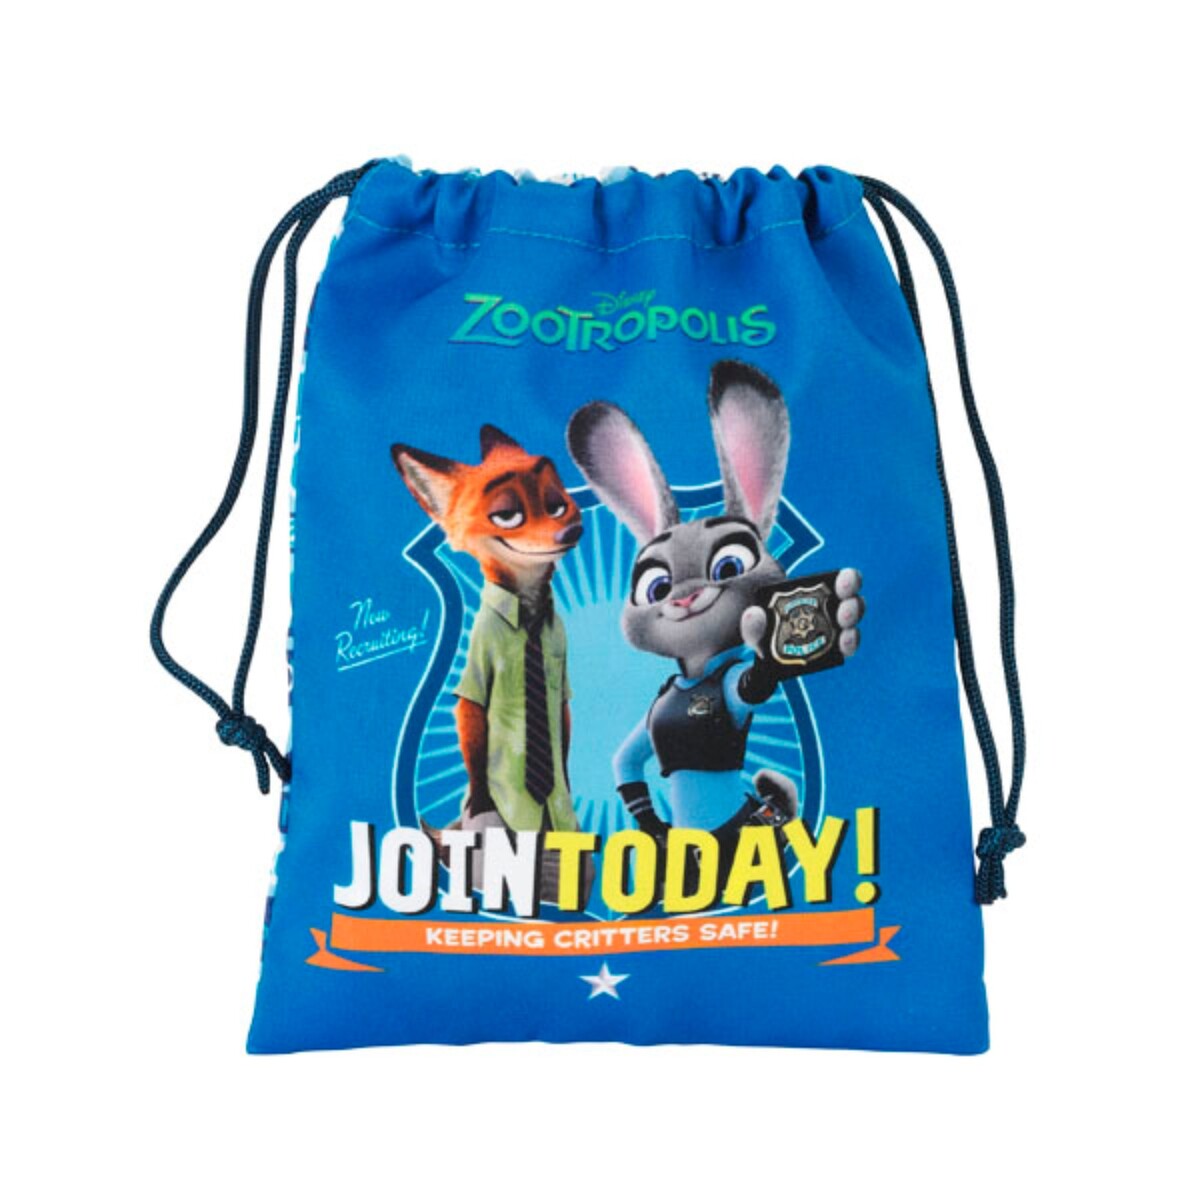 (ディズニー) Disney ズートピア オフィシャル商品 キッズ・子供用 キャラクター 巾着袋 収納ポーチ 【海外通販】画像